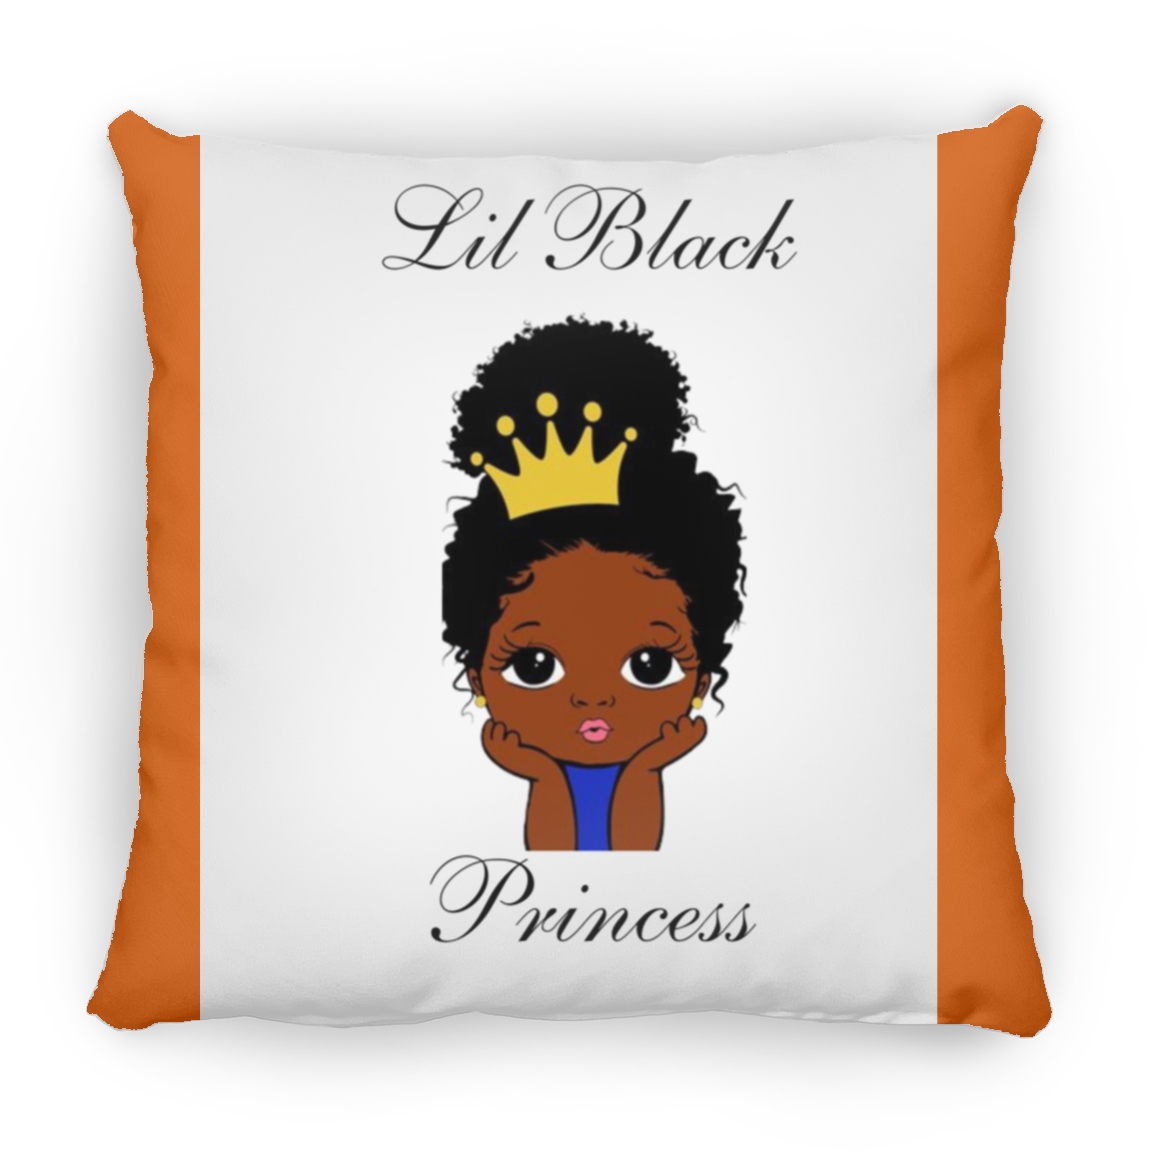 Lil Black Princess Large Square Pillow